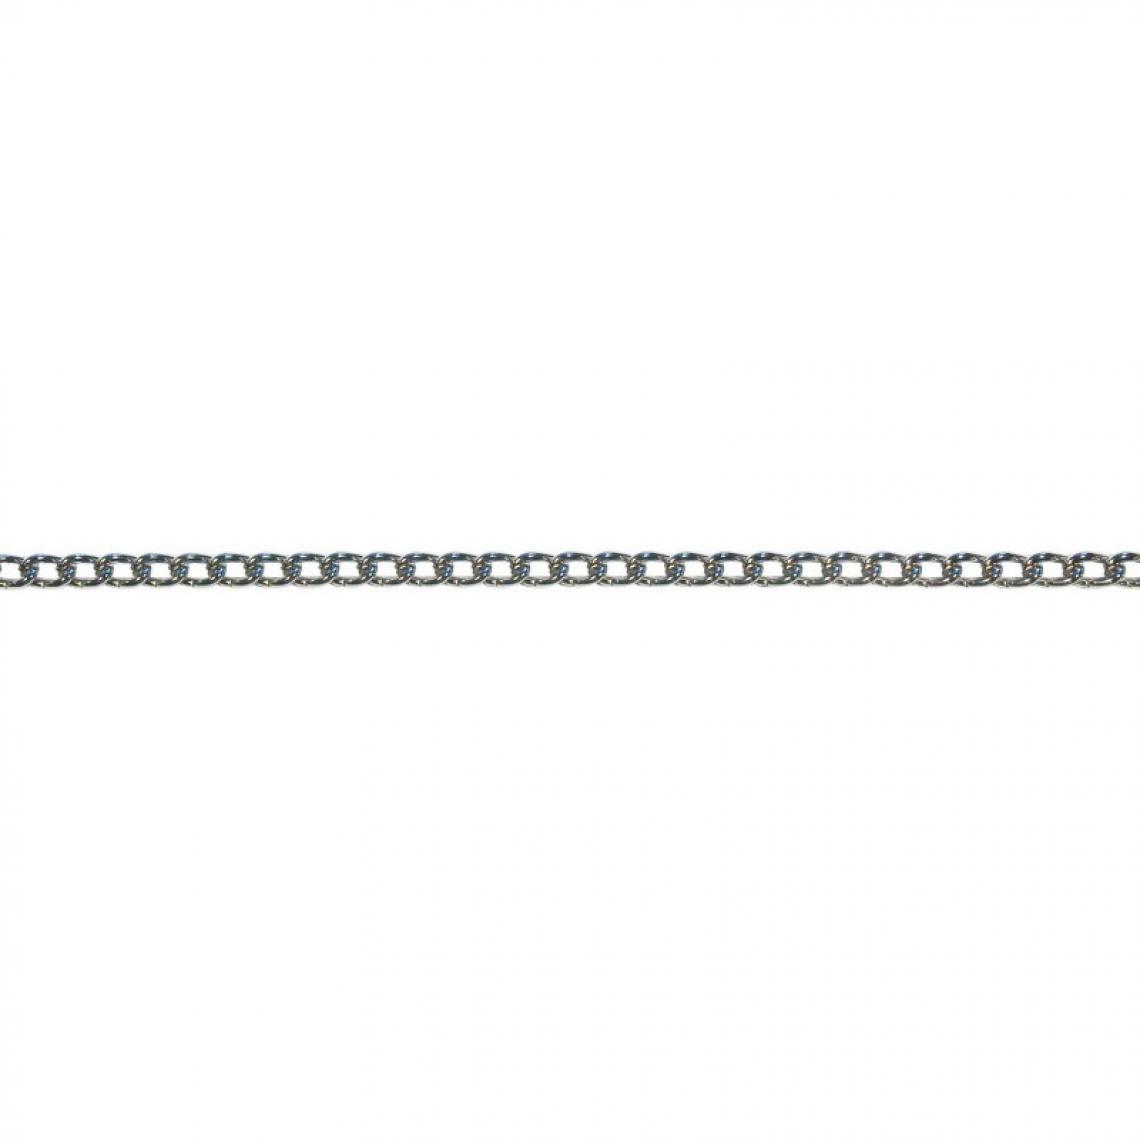 marque generique - Chaine ette 2,5 vern. Ro.10m (130 x 60) (Par 10) - Corde et sangle